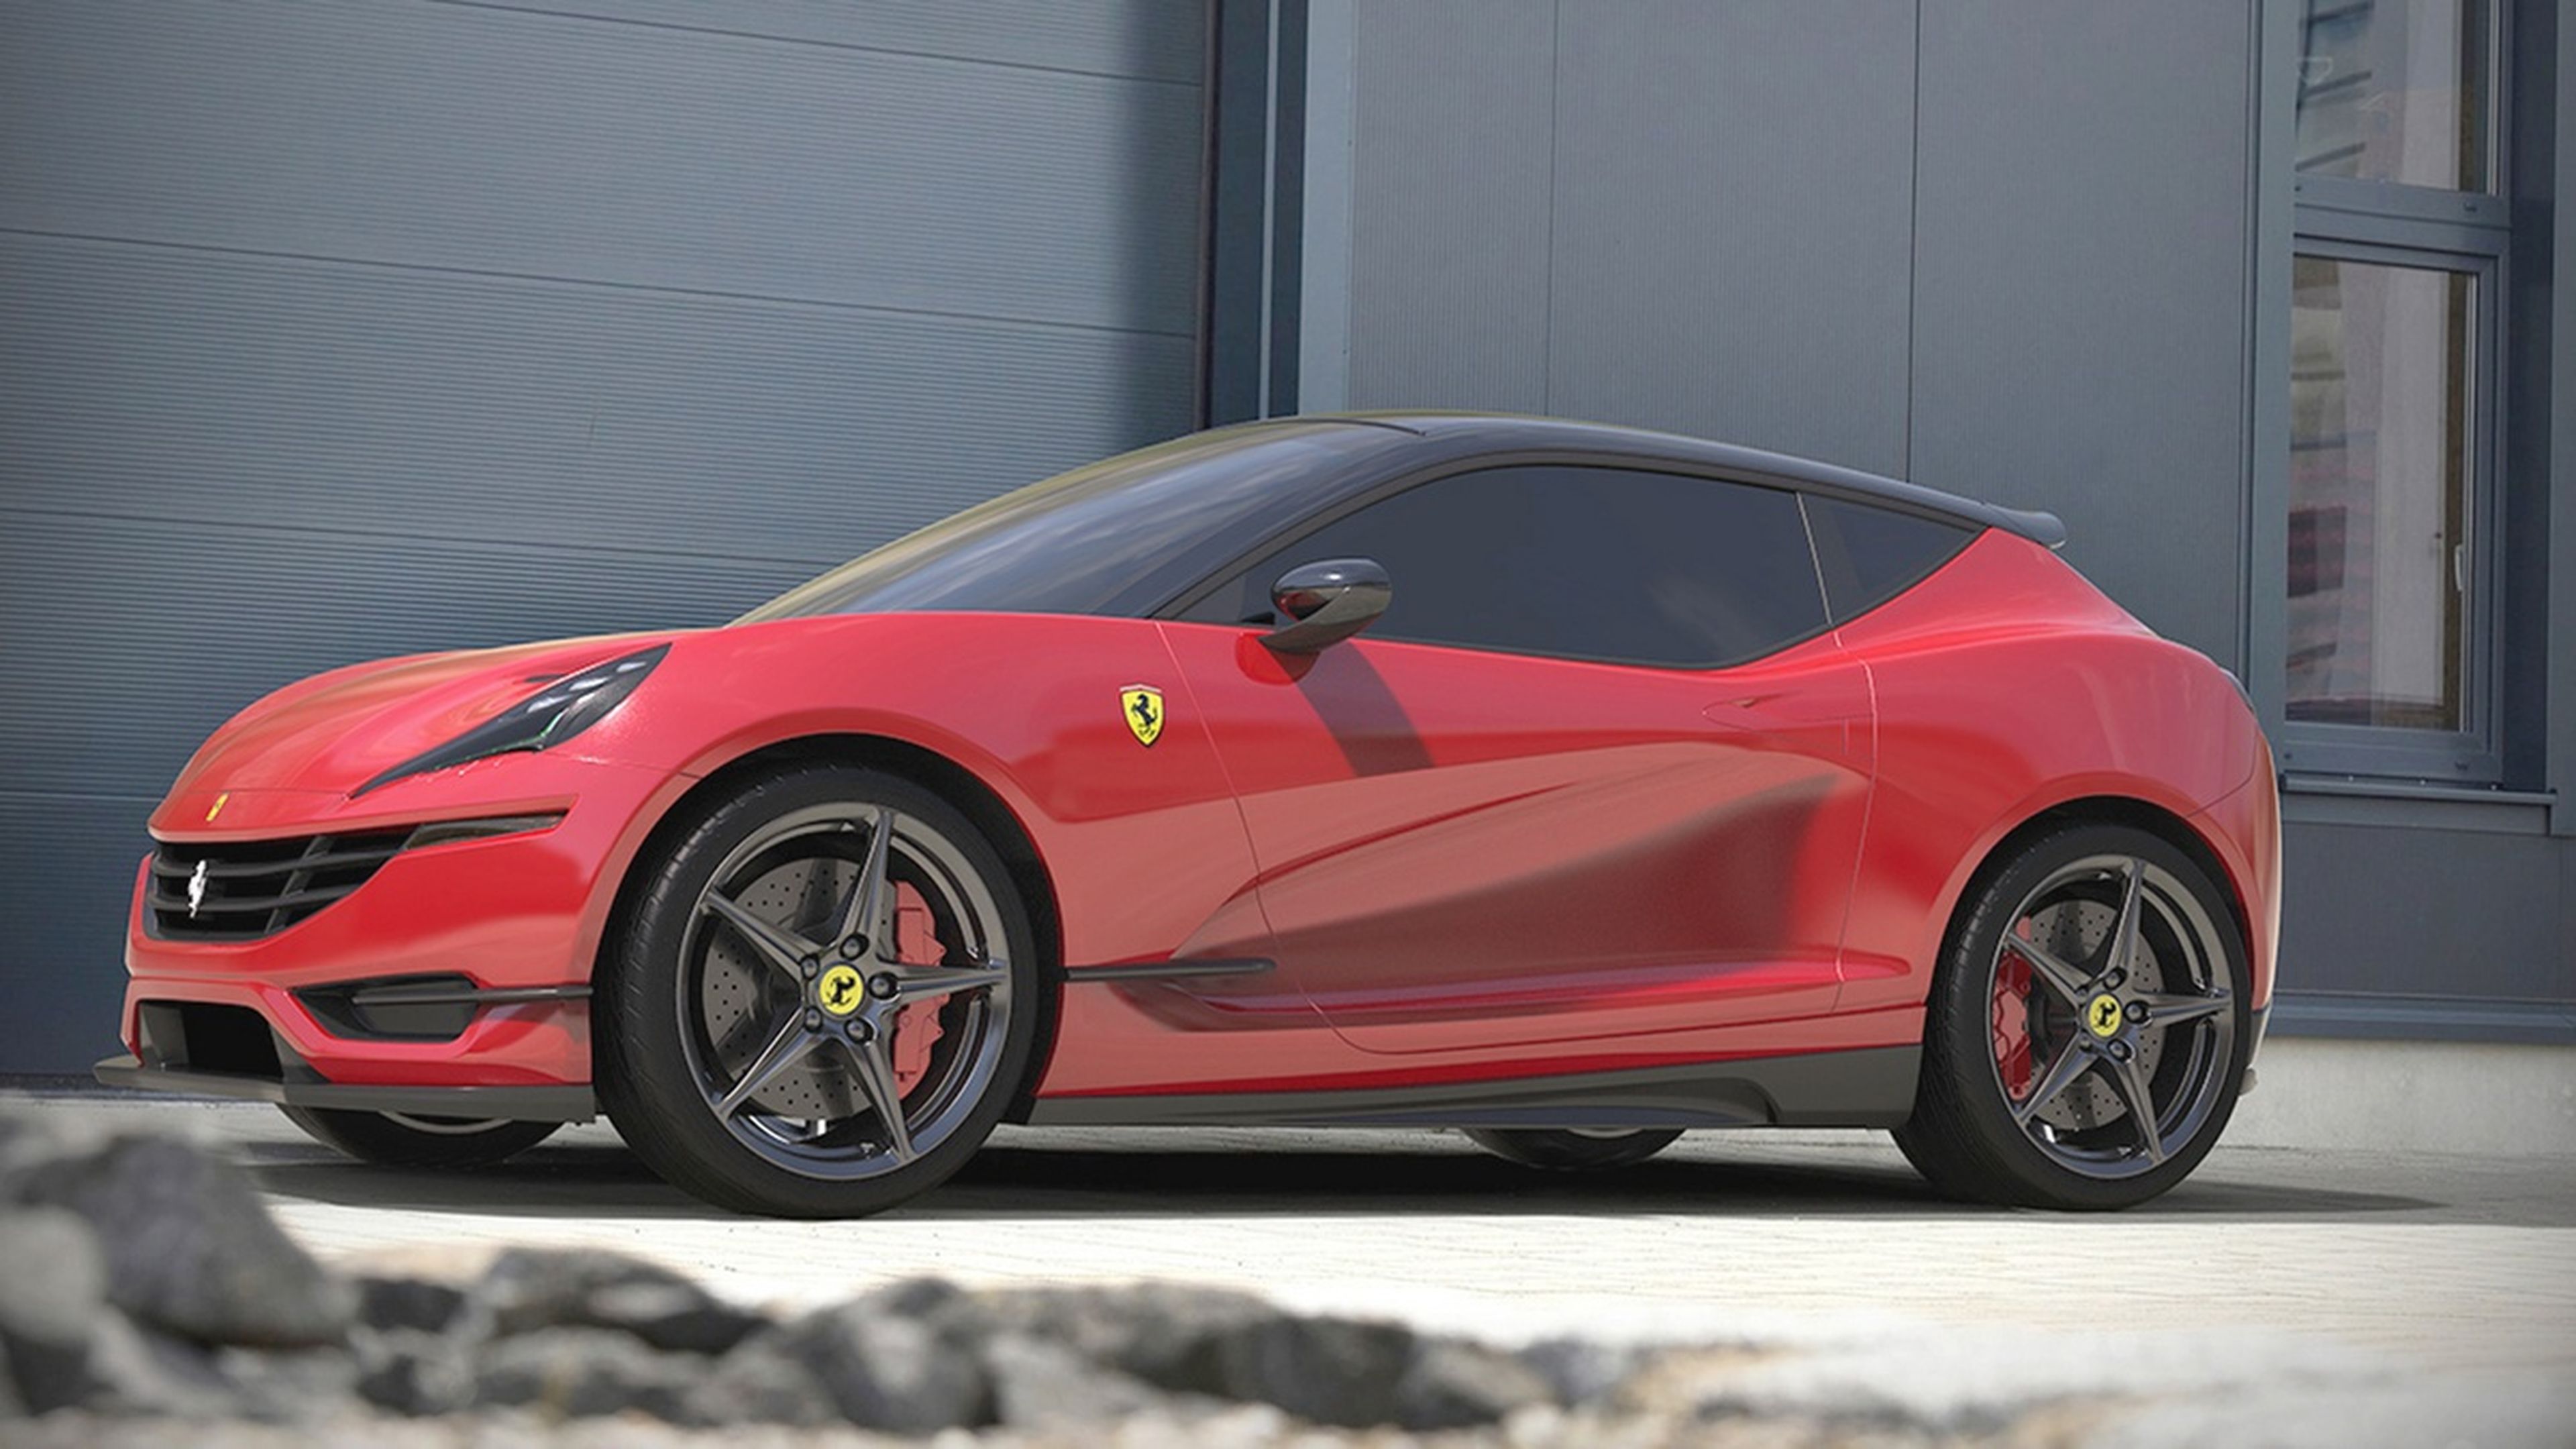 ¿Cómo sería un Ferrari compacto? Aquí lo tienes...